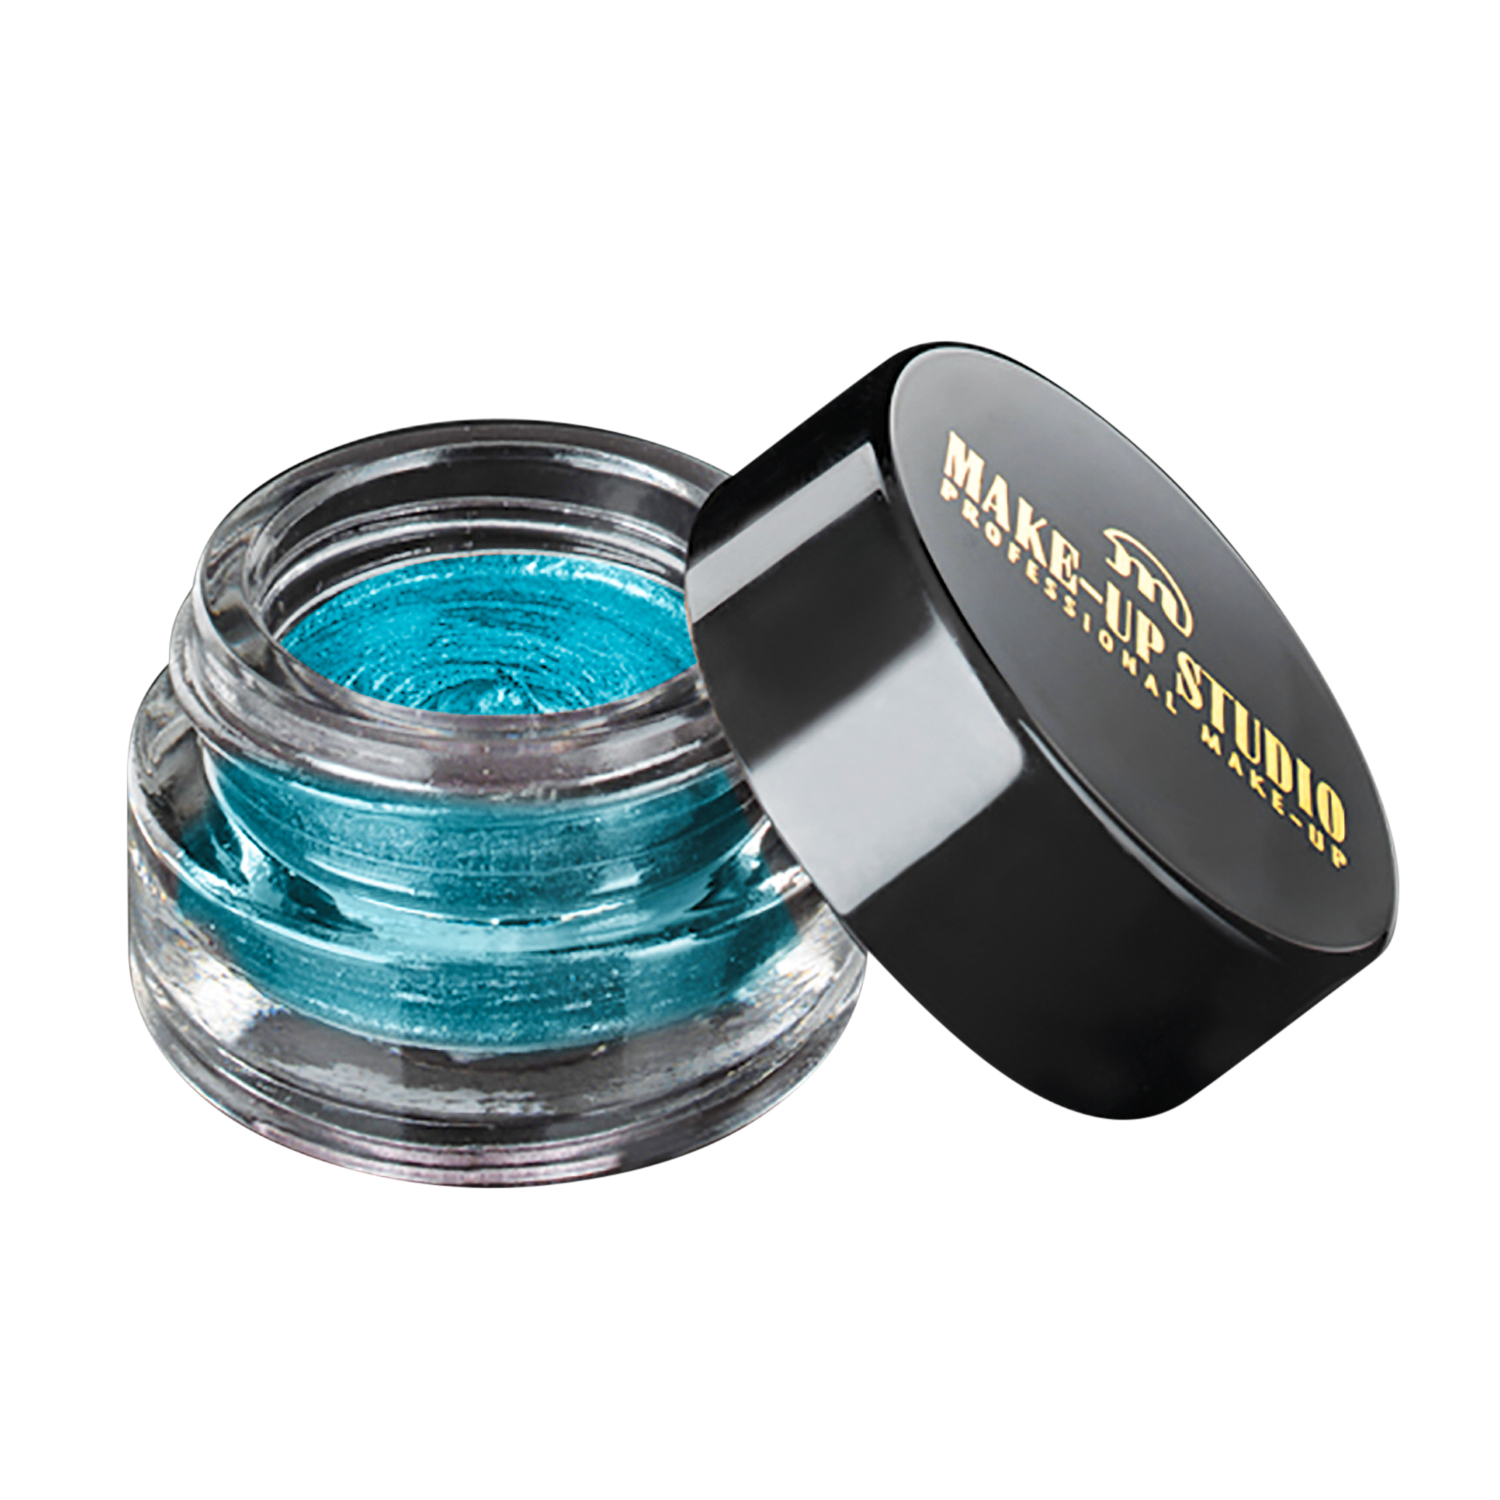 Make-up Studio Durable Eyeshadow Mousse Oogschaduw - Turquoise Treasure